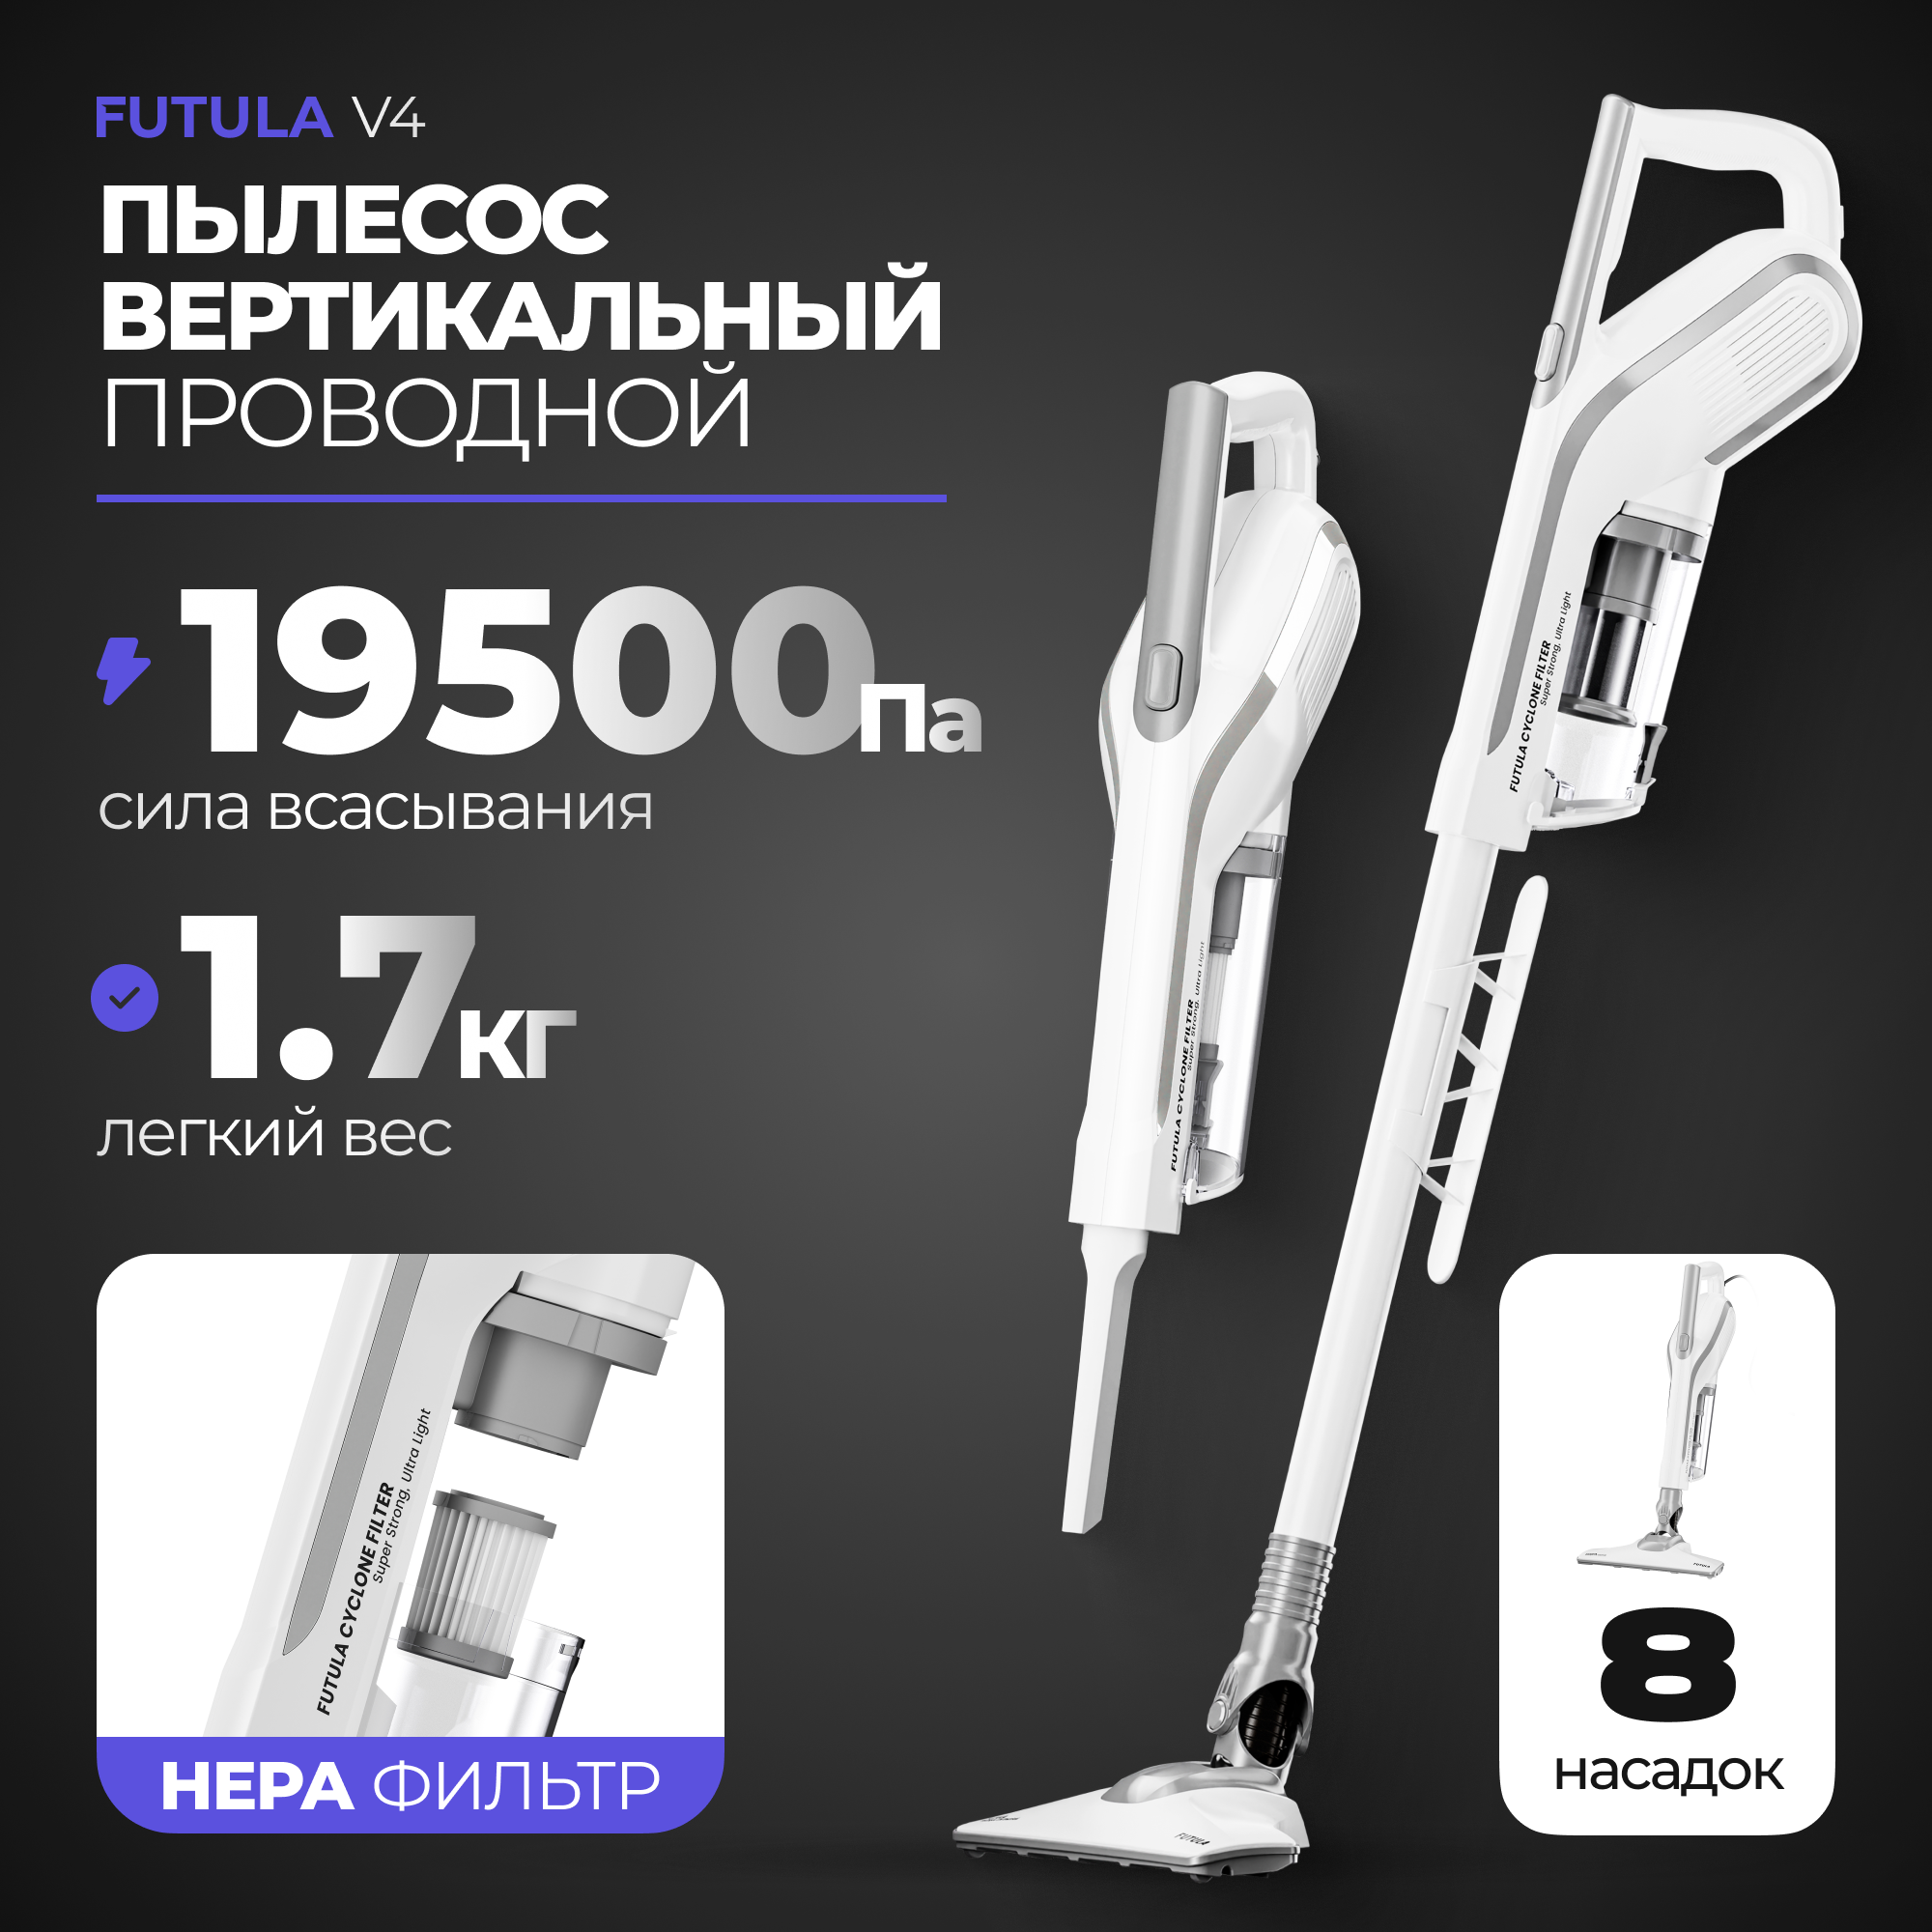 Пылесос Futula Vacuum Cleaner V4 белый - купить в Futuland, цена на Мегамаркет